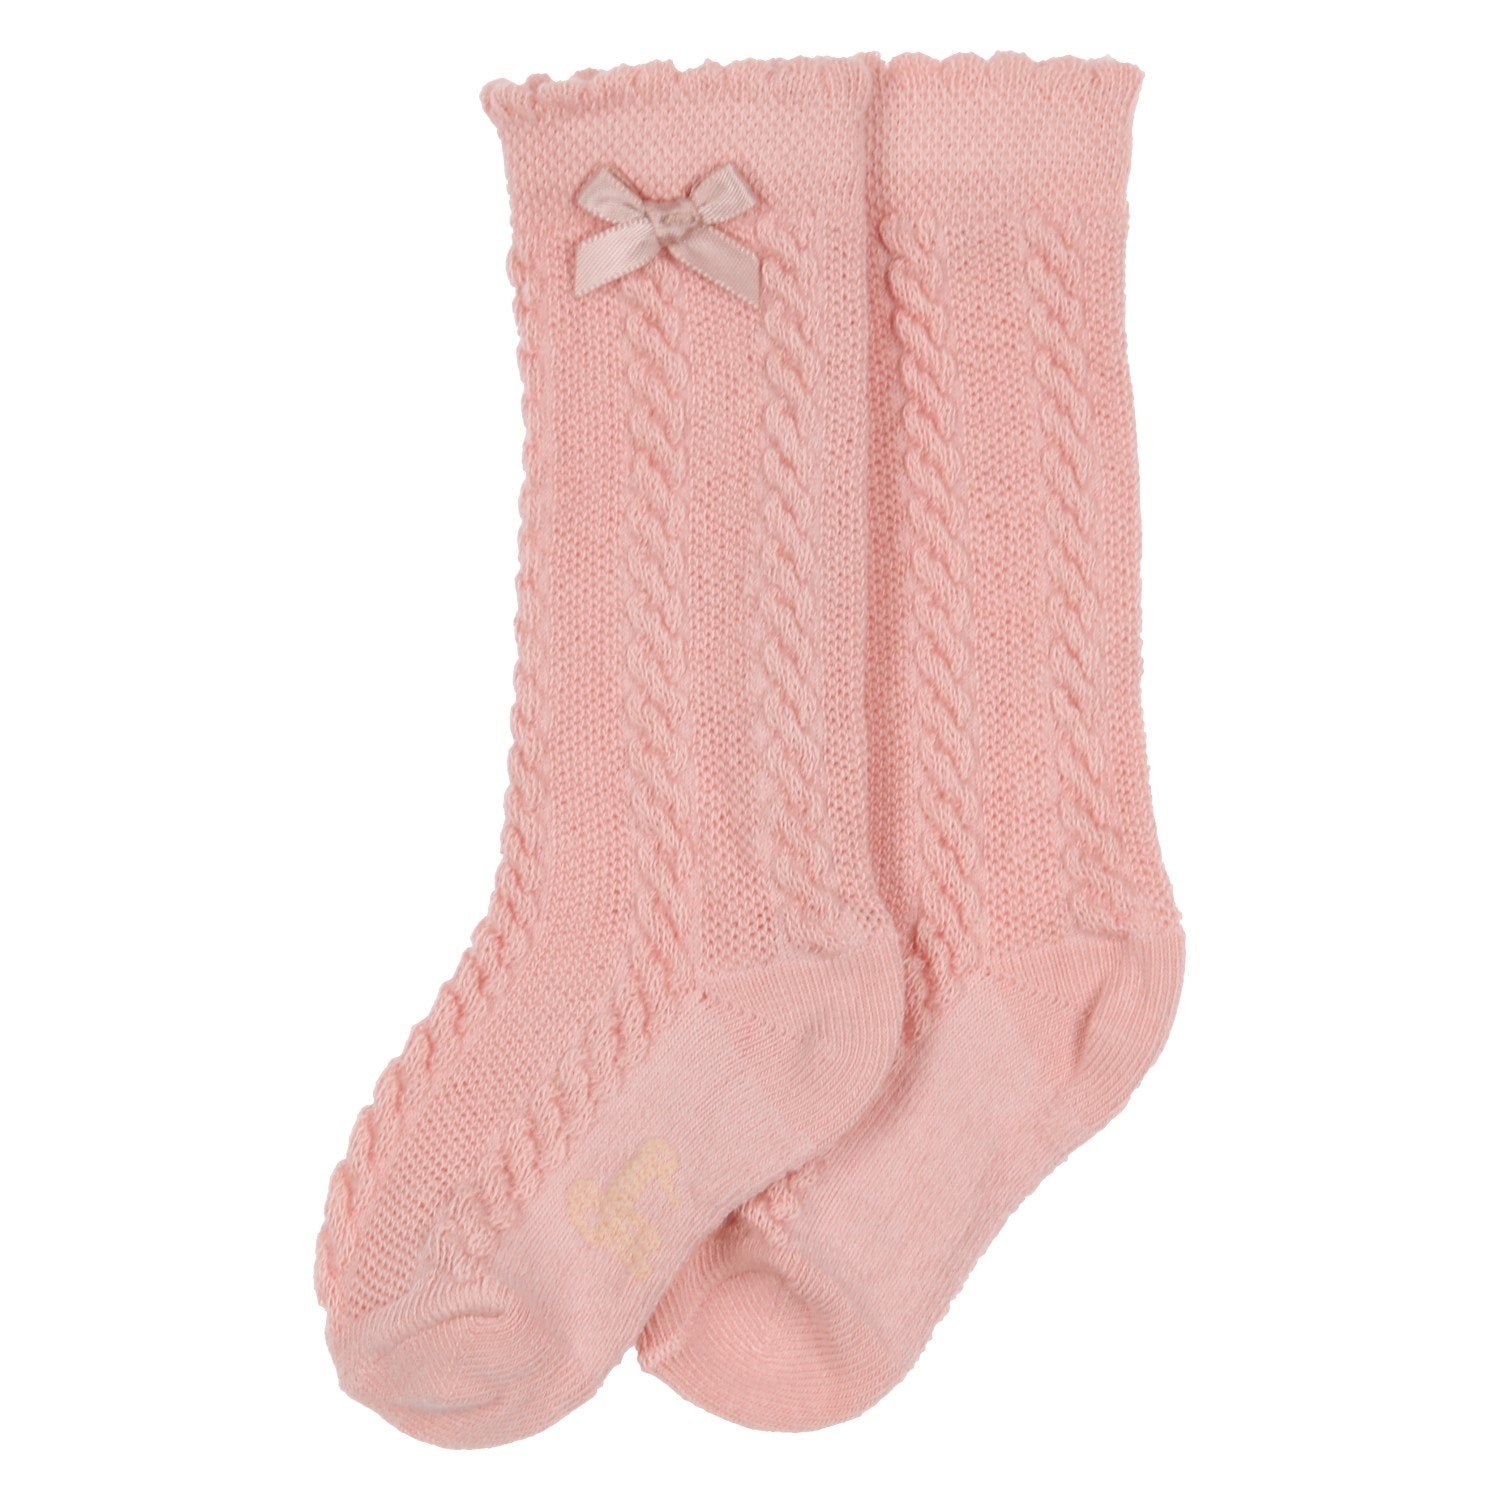 Baby meisjes SOKKEN - girls knee socks - Pr van GYMP in de kleur VIEUX-ROSE in maat 19, 22.